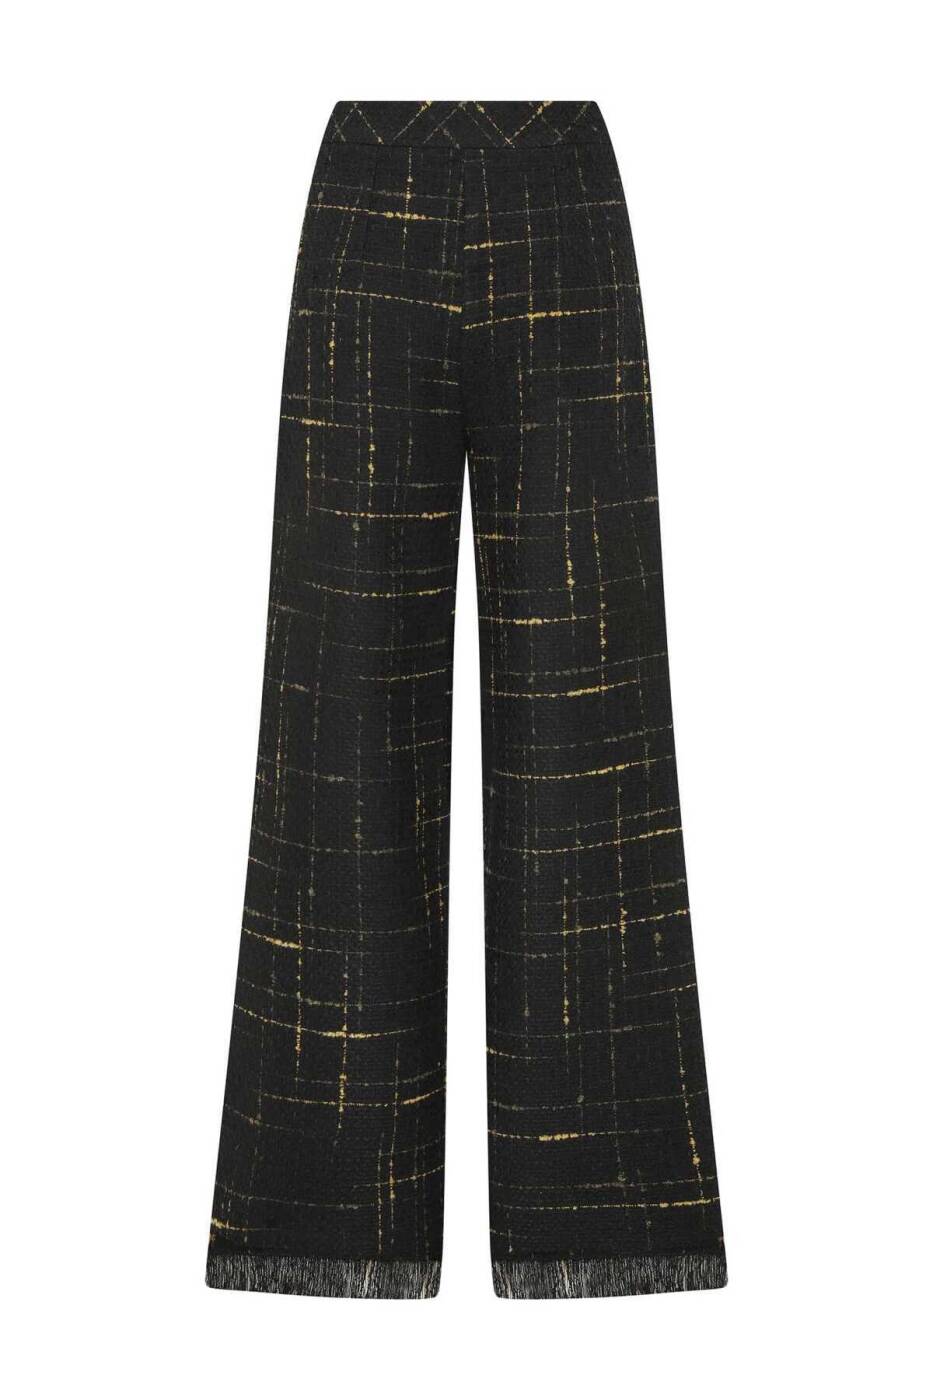  Fermuarlı Çizgili Kadın Pantolon Standart Renk - 5